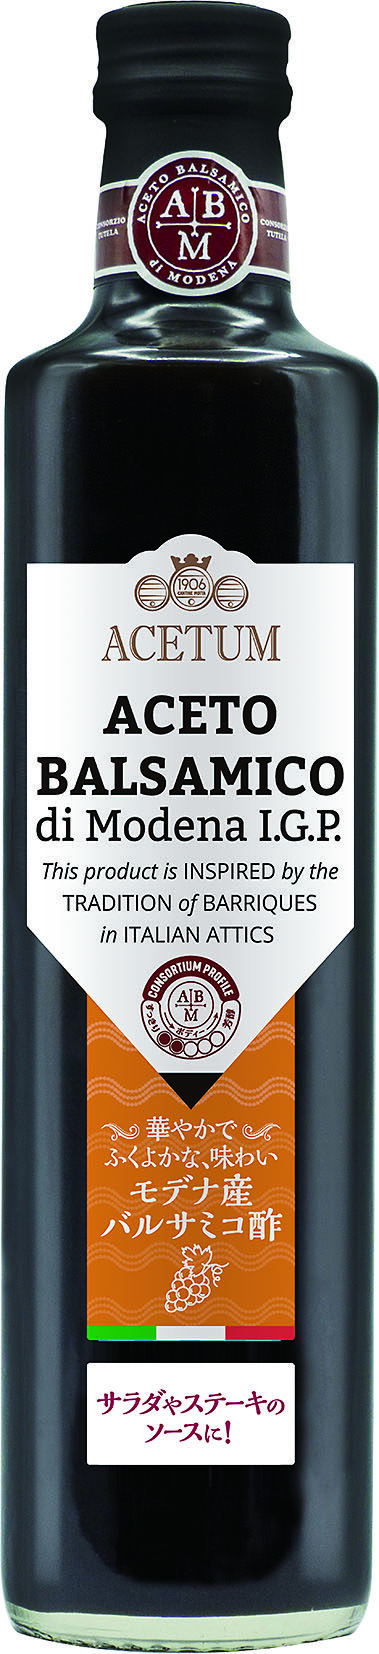  ACETUM Aceto Balsamico Red Label 500ml アチェートゥム アチェート・バルサミコ・レッドラベル 500ml